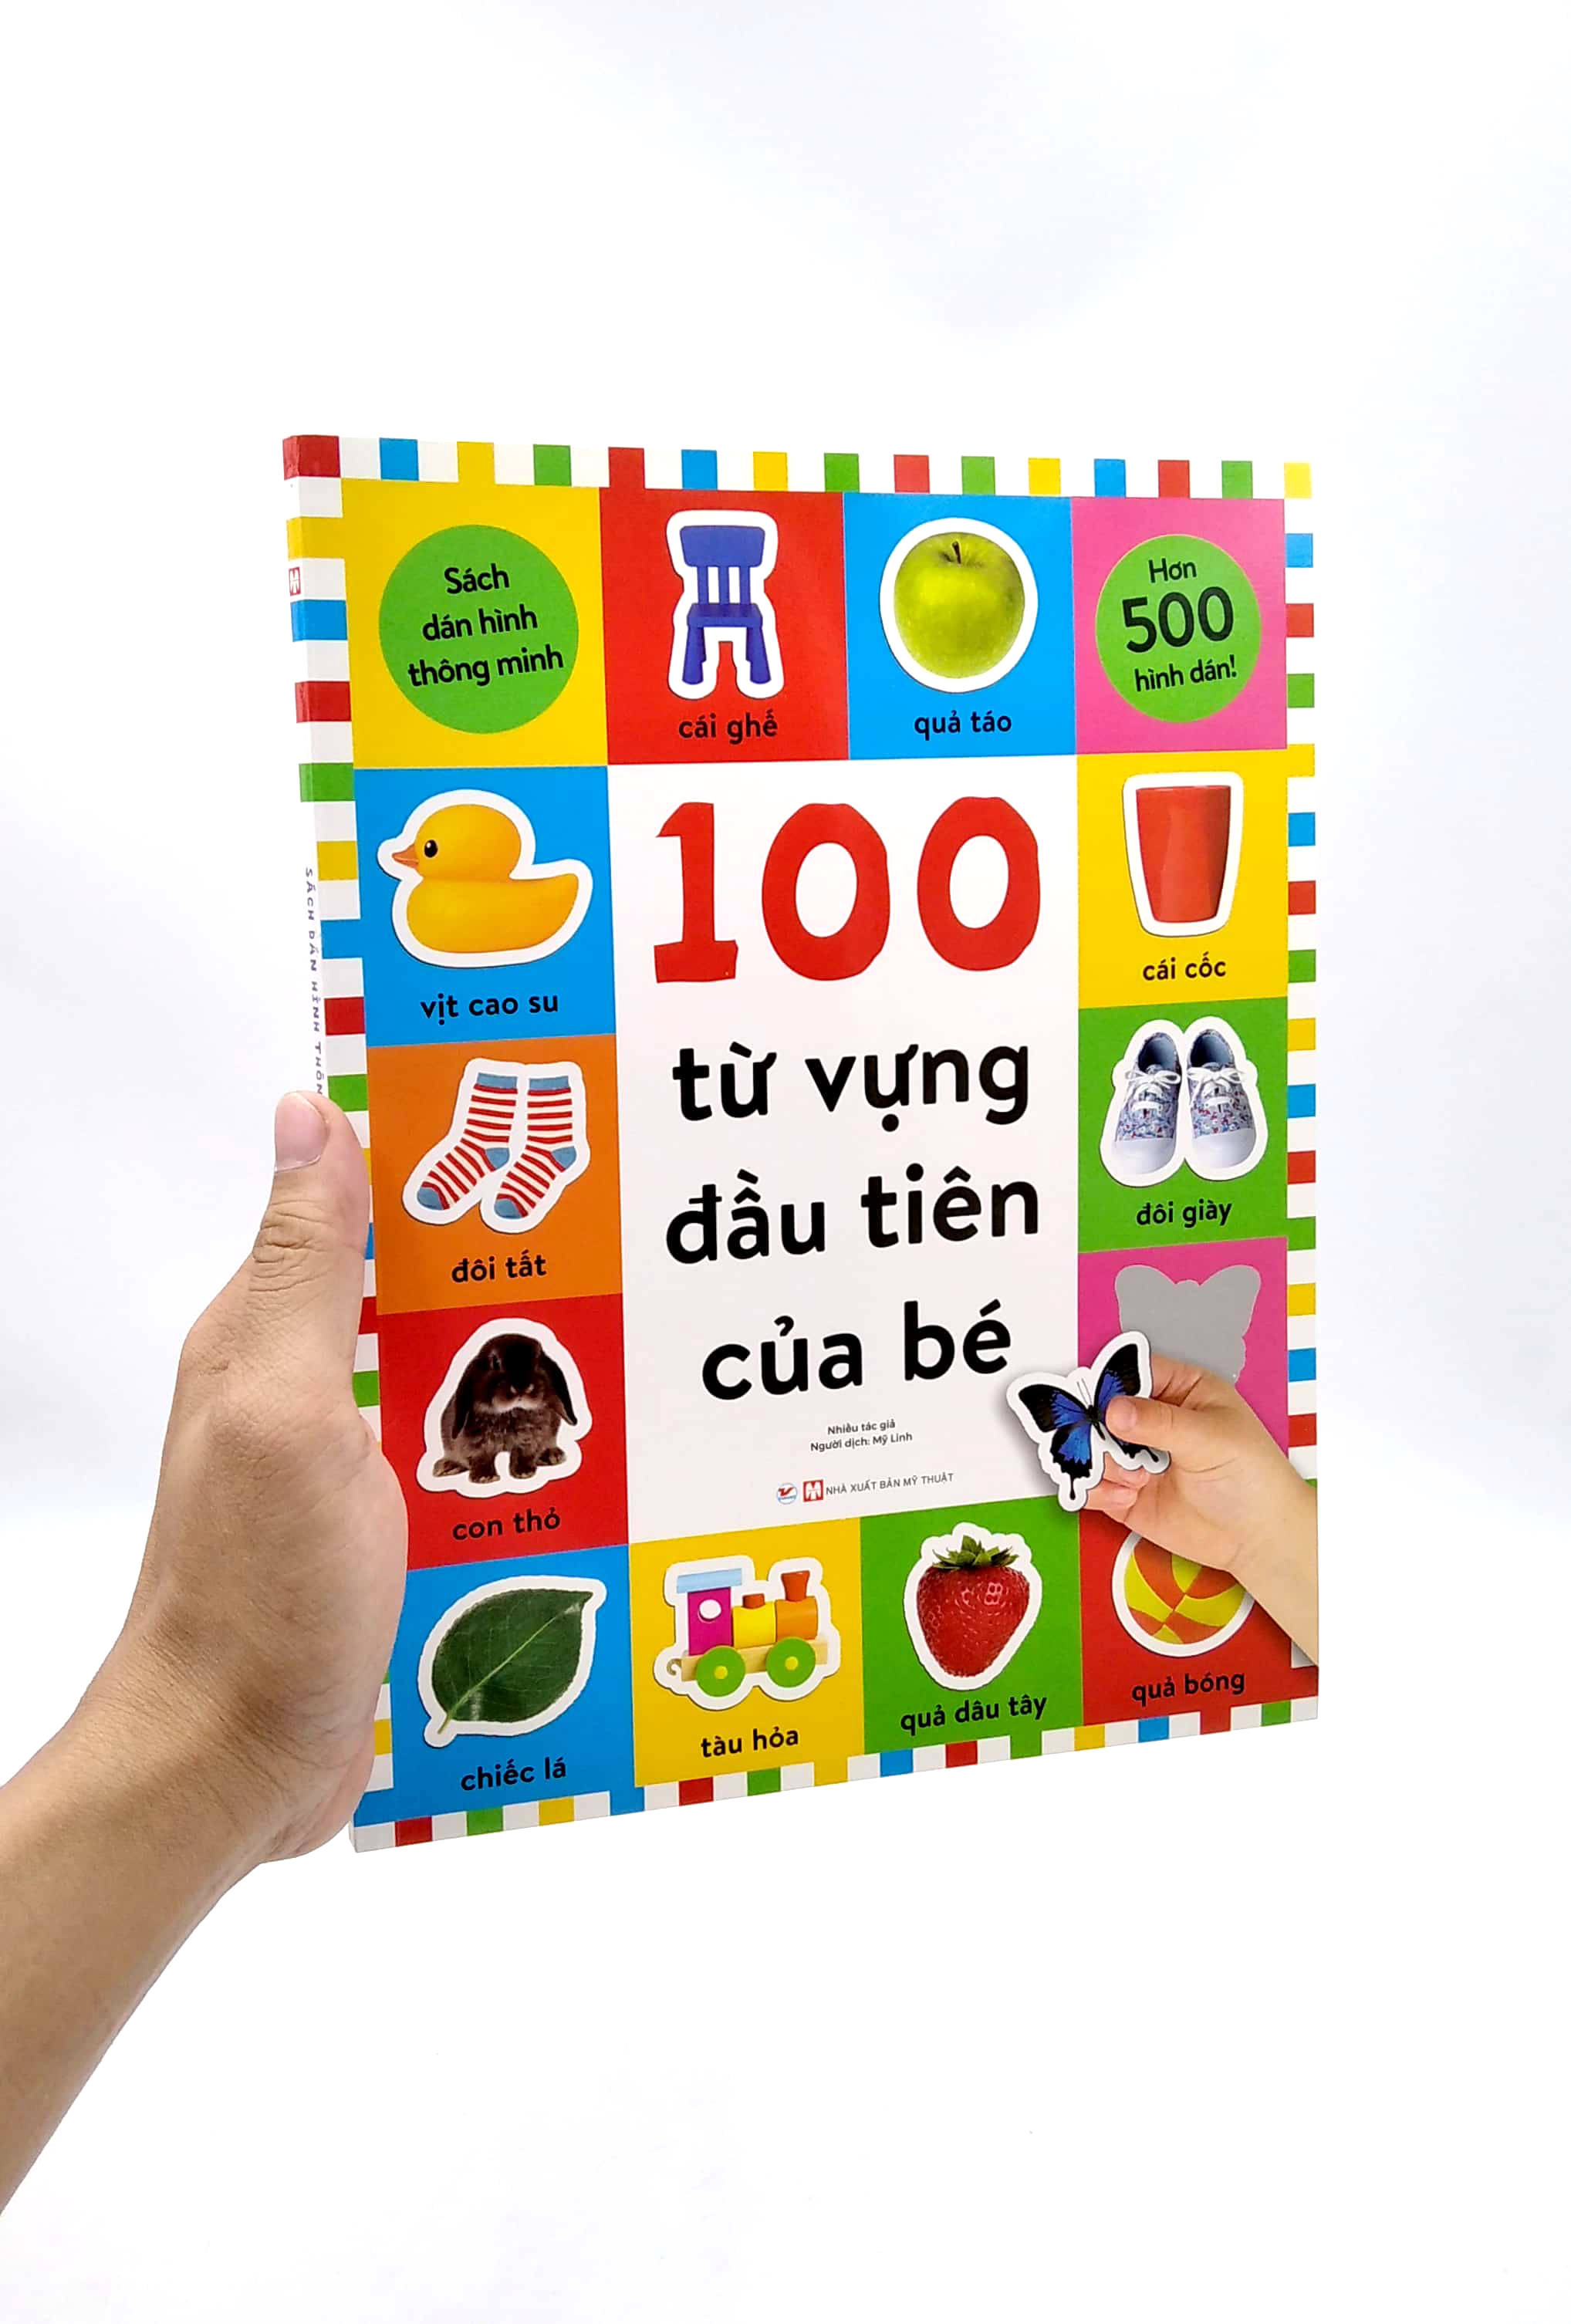 Sách Dán Hình Thông Minh - 100 Từ Vựng Đầu Tiên Của Bé PDF